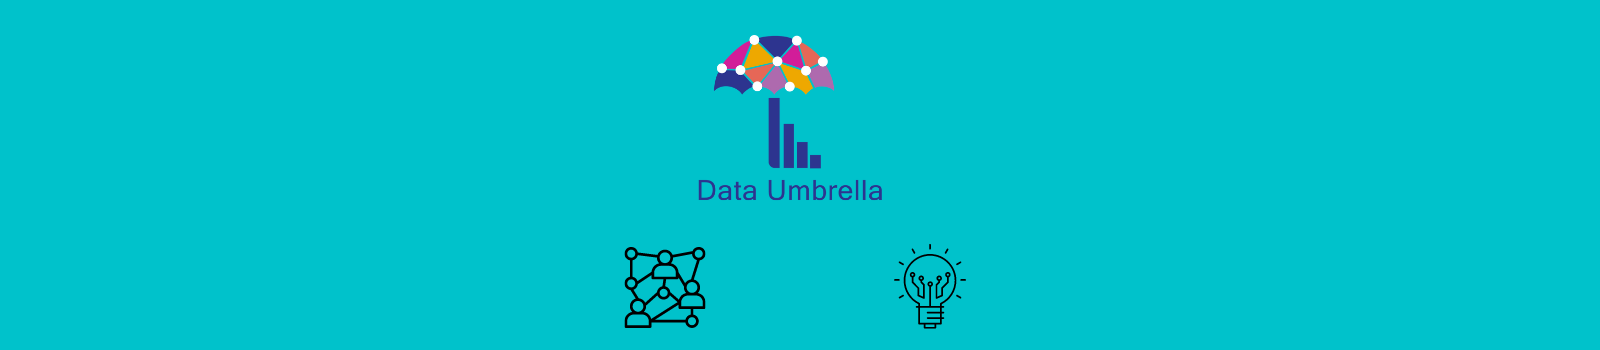 Data Umbrella: Press